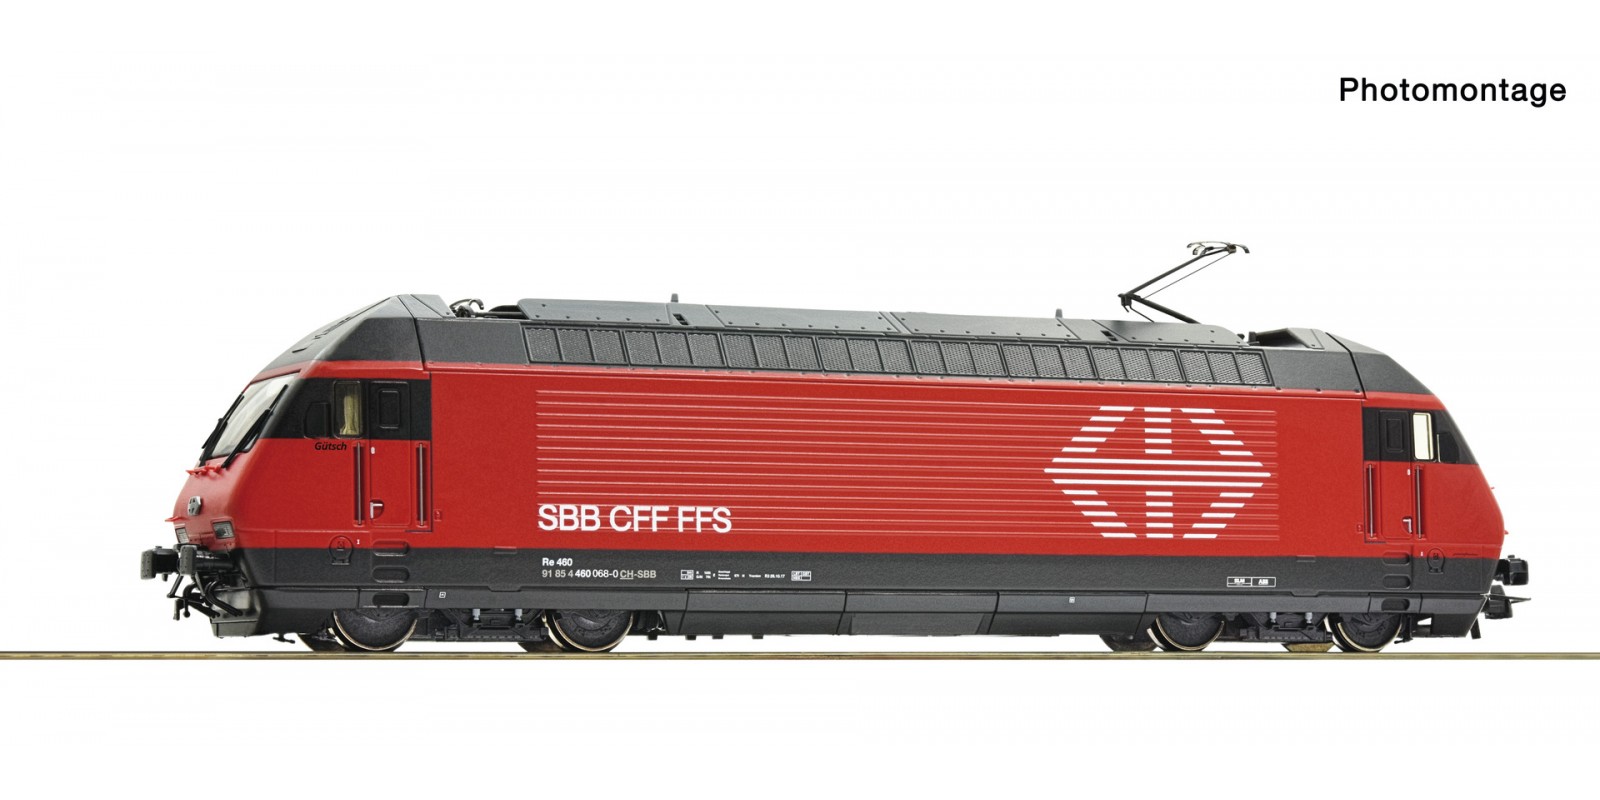 RO70660 Electric locomotive 460 068-0